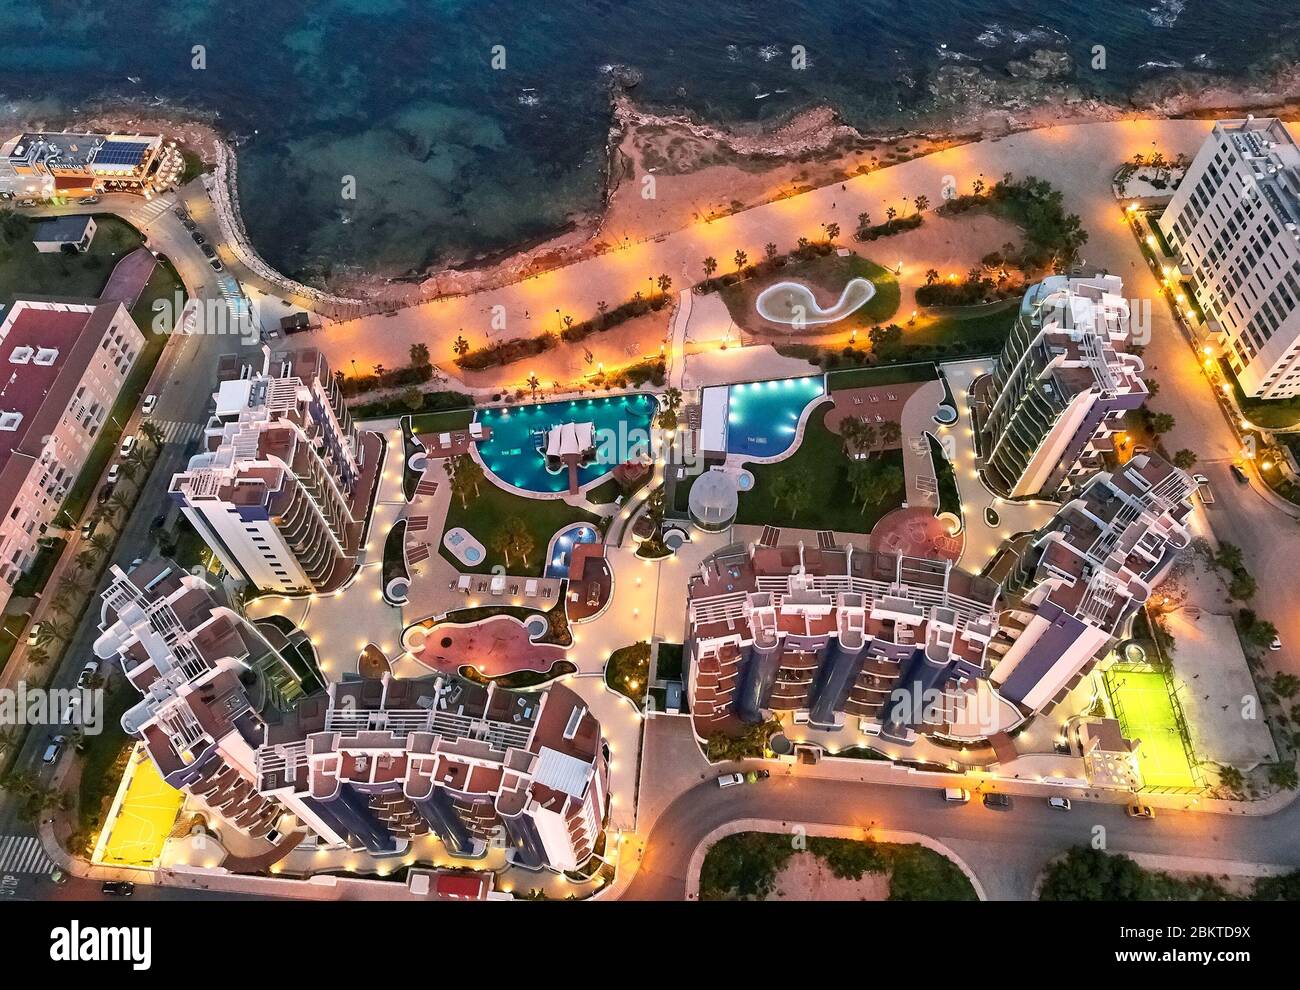 Orihuela, Espagne - 27 janvier 2019: Vue de dessus complexe résidentiel architectural moderne de luxe avec piscines près de la mer Méditerranée vue en soirée Banque D'Images